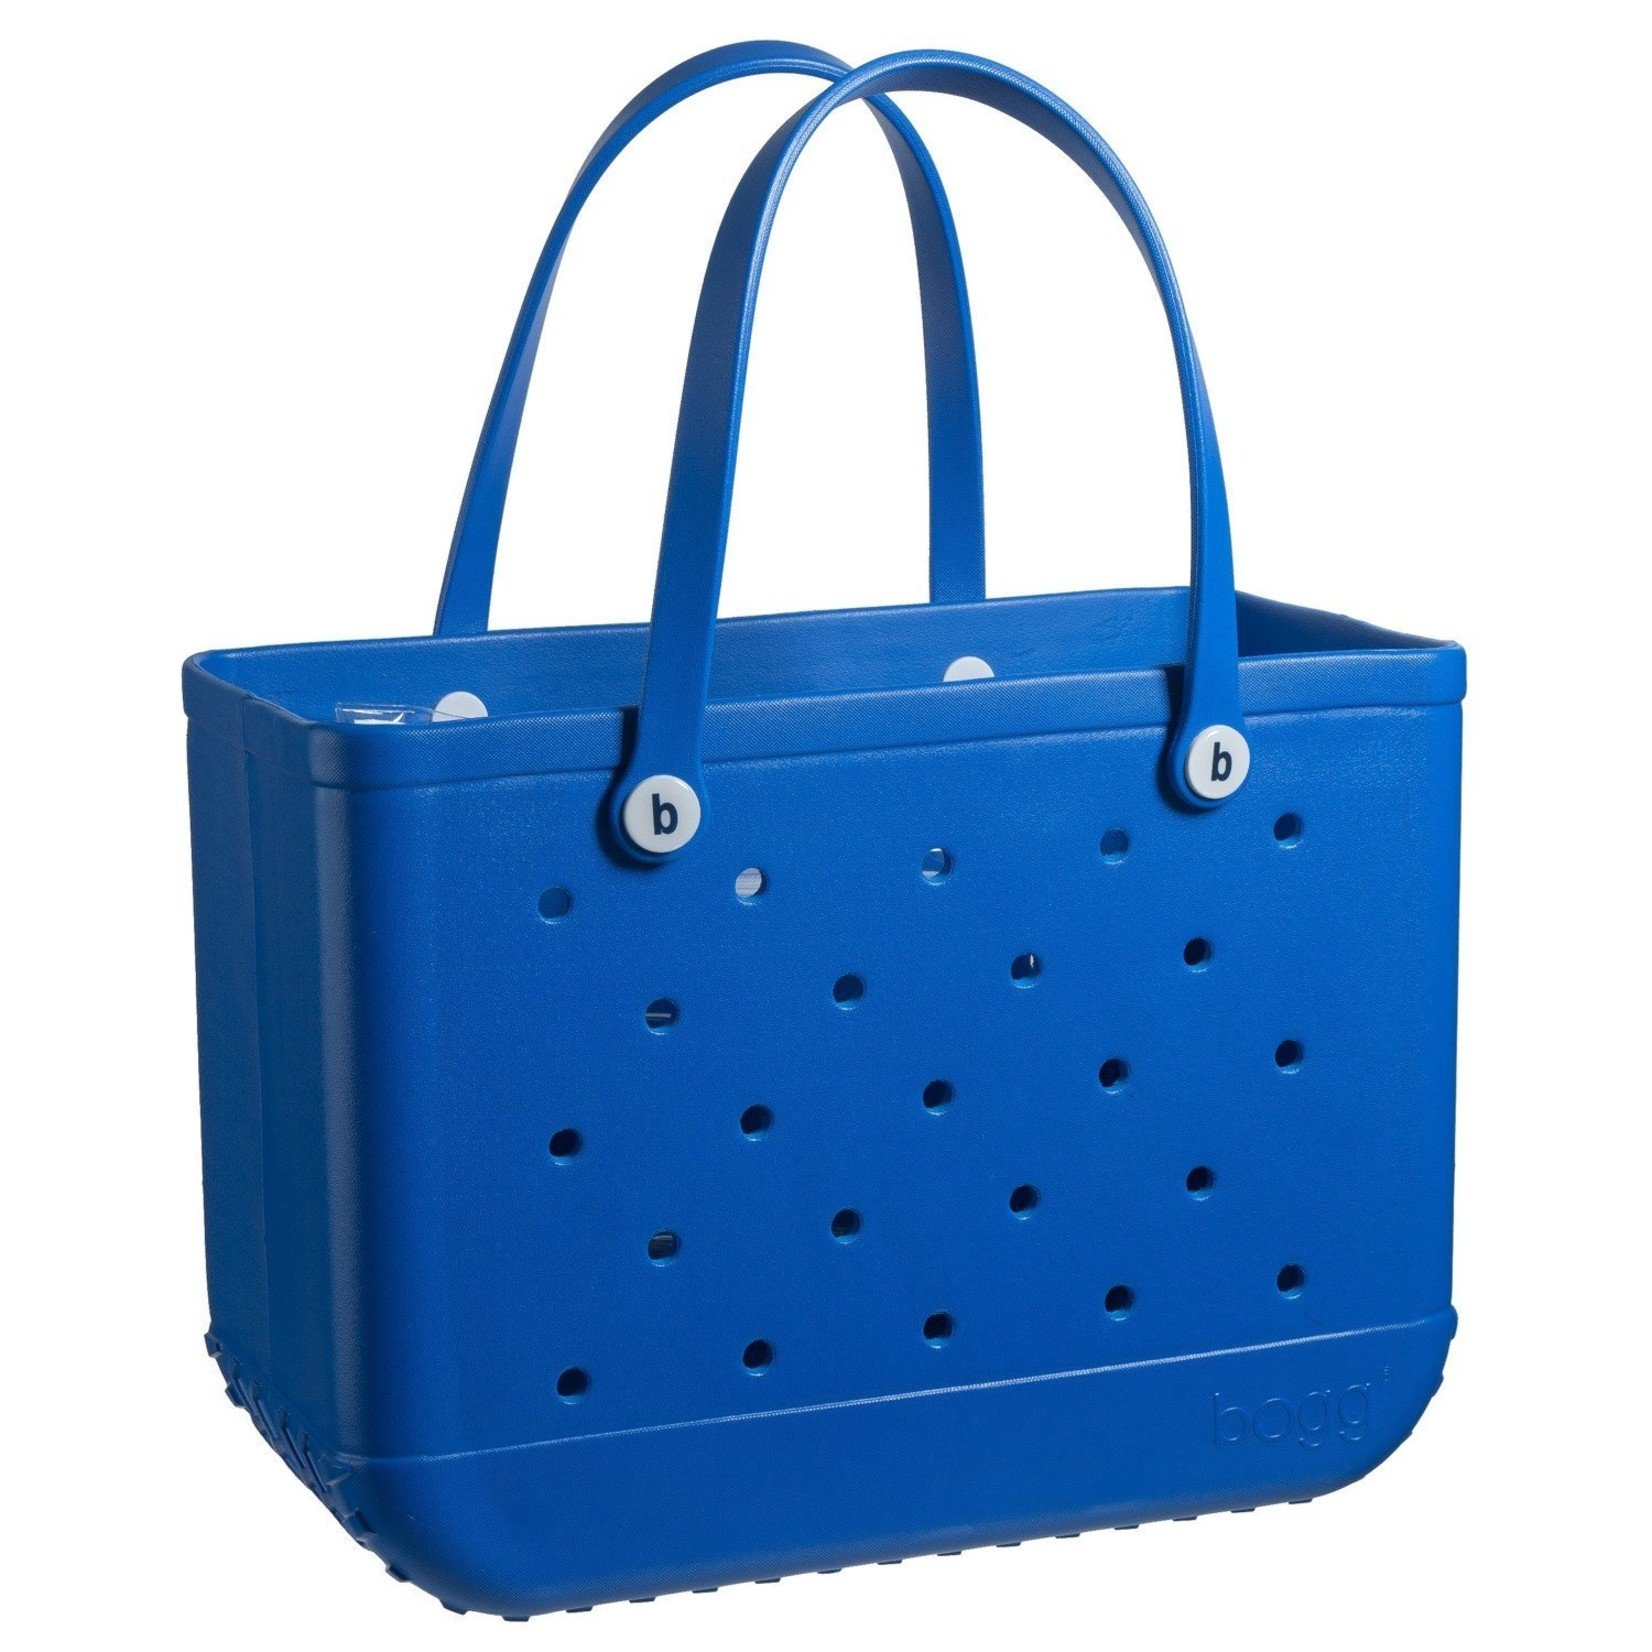 Bogg Bag The Original Large Bogg - Blue Eyed